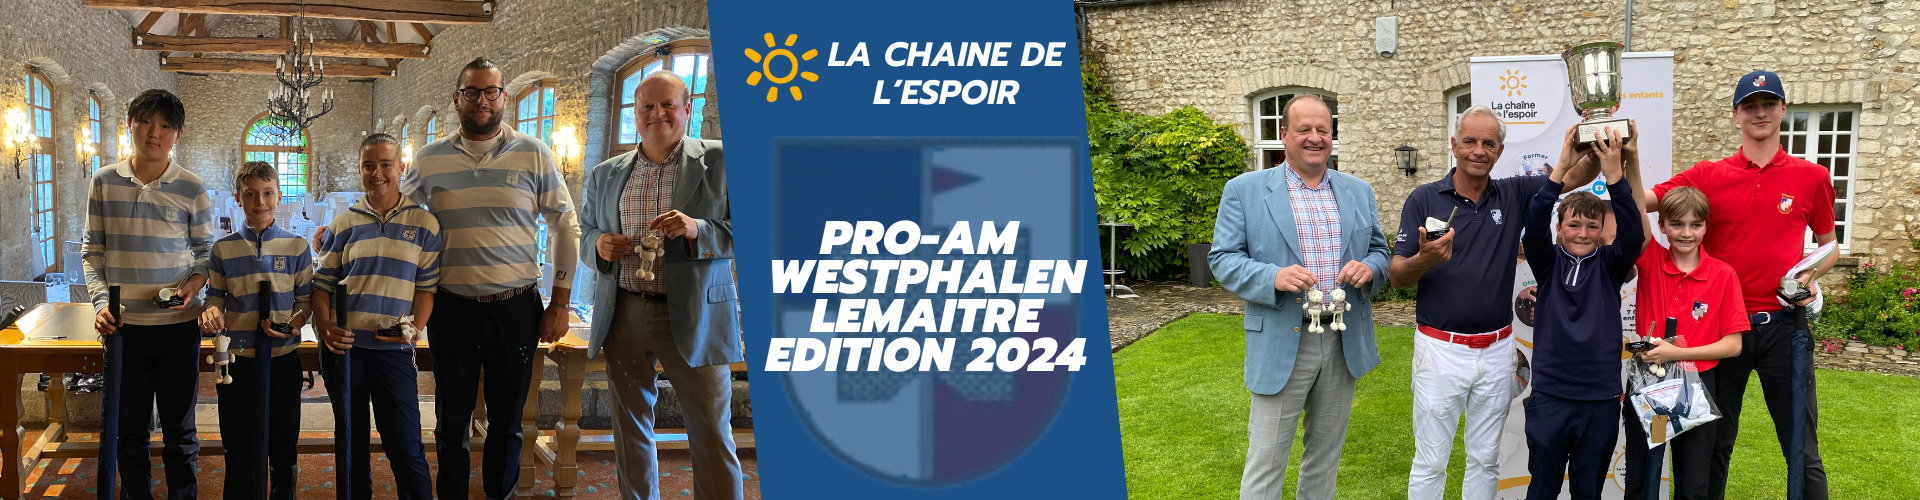 Pro-Am Bernard Westphalen Lemaitre 2024